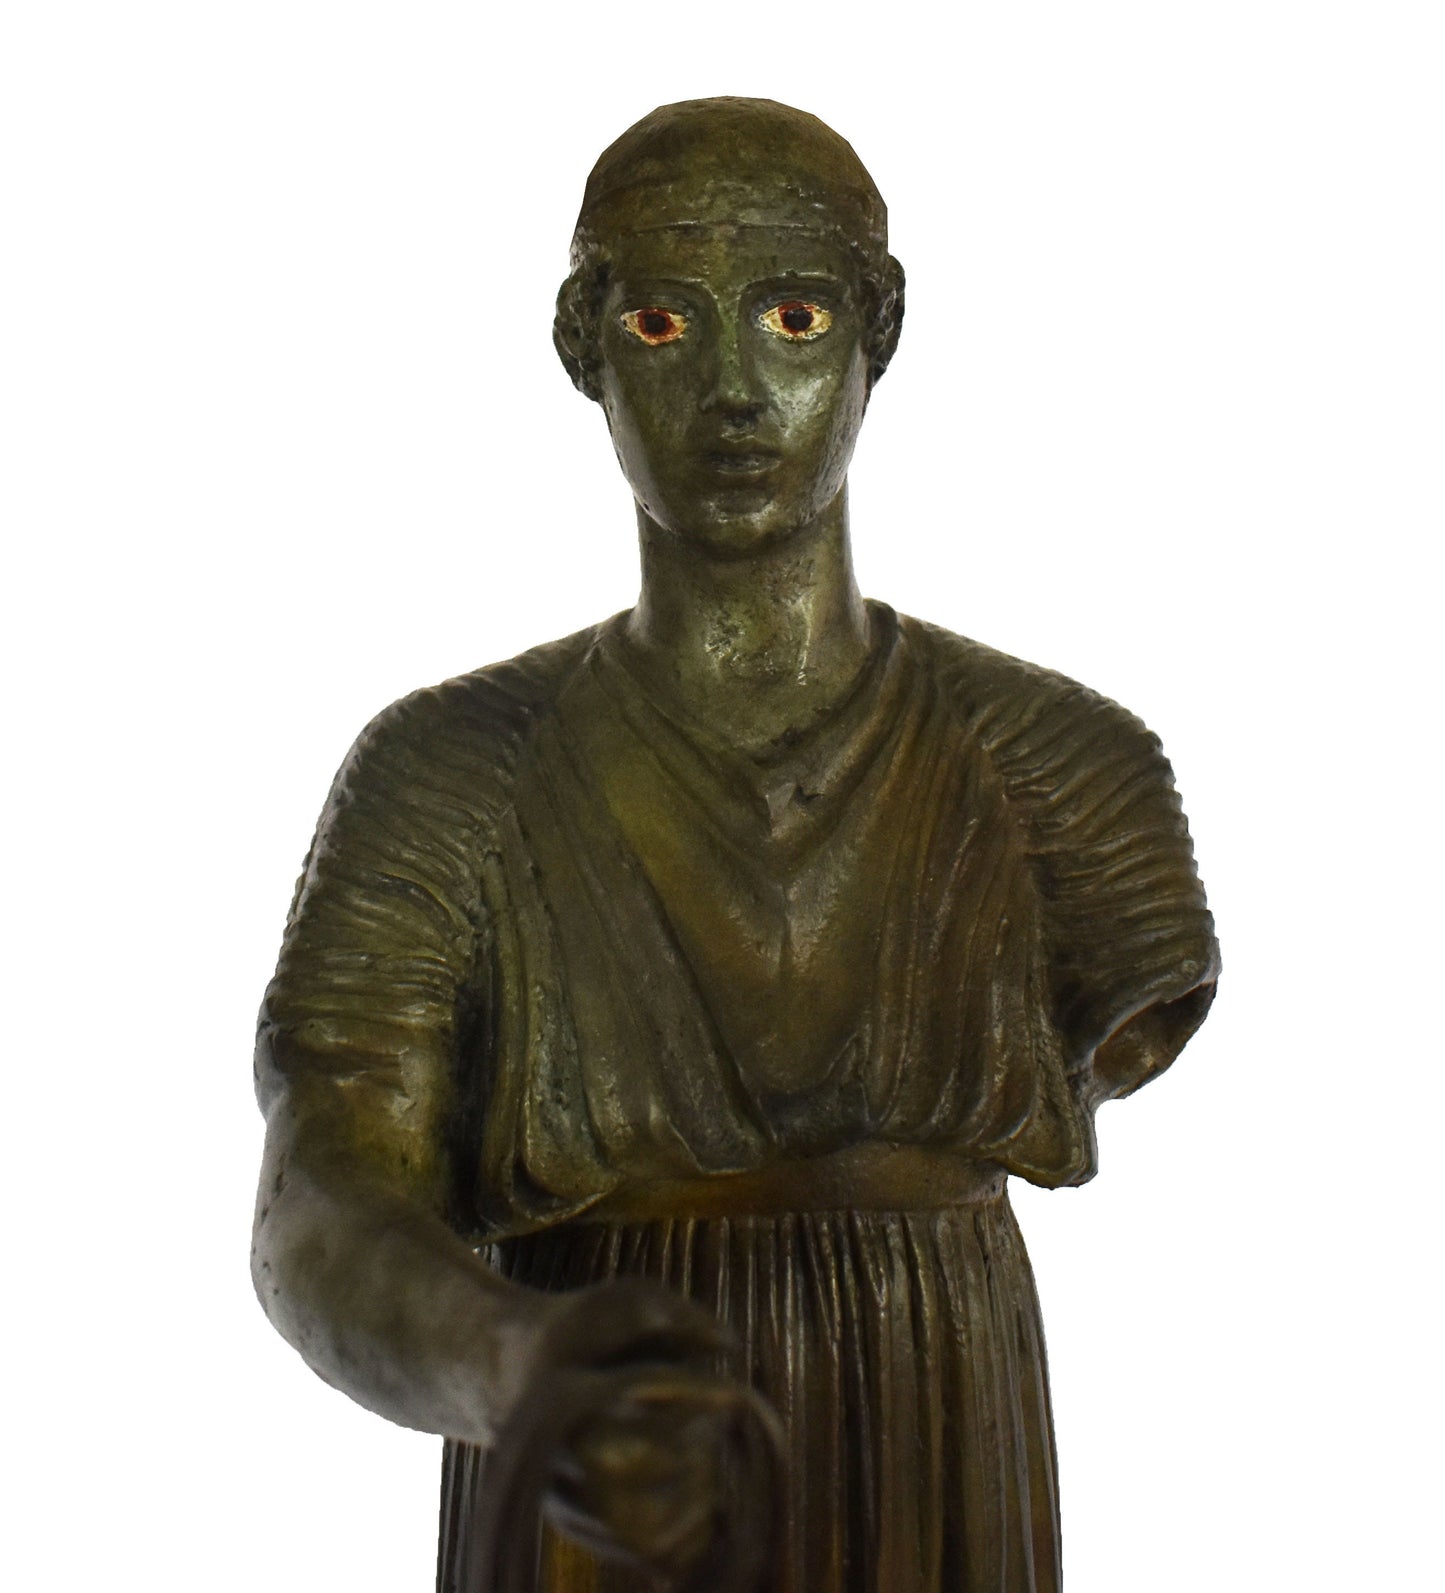 Charioteer of Delphi, Heniokhos - Museum Replica  - pure Bronze Sculpture